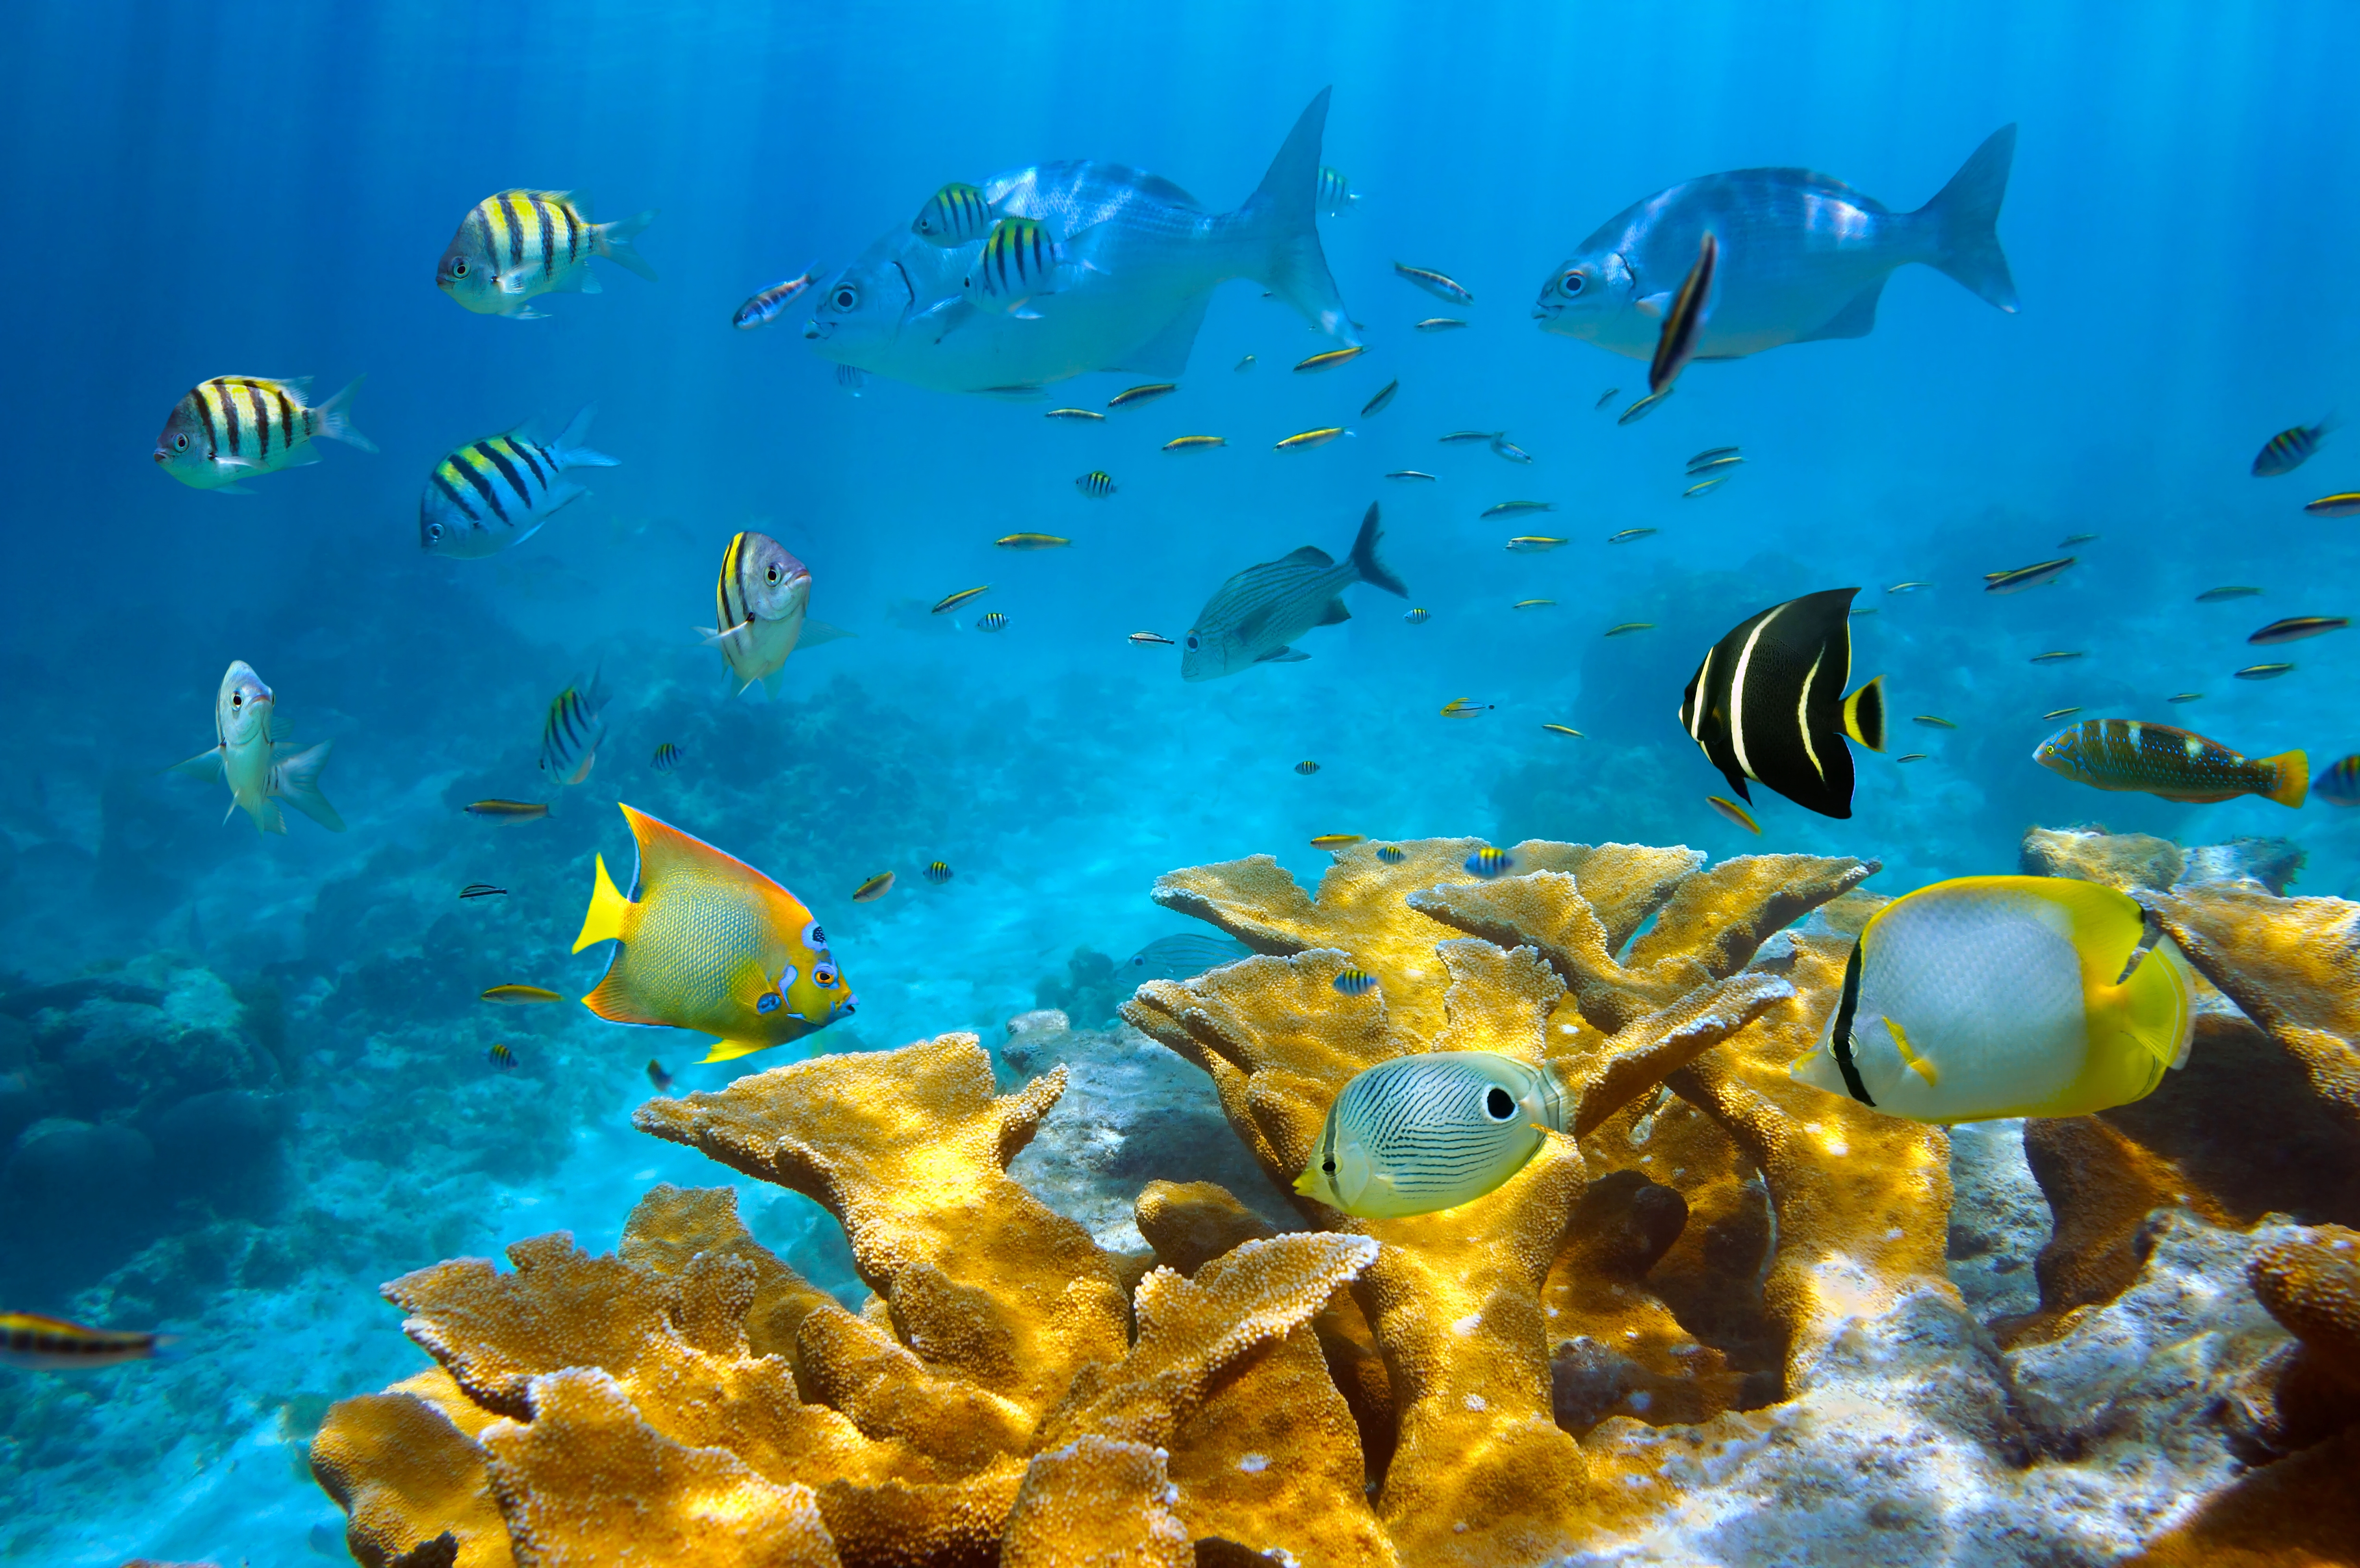 Обои на стол рыбки. Шарм-Эль-Шейх море. Подводный мир океана. Подводные обитатели океана. Рыбки в море.